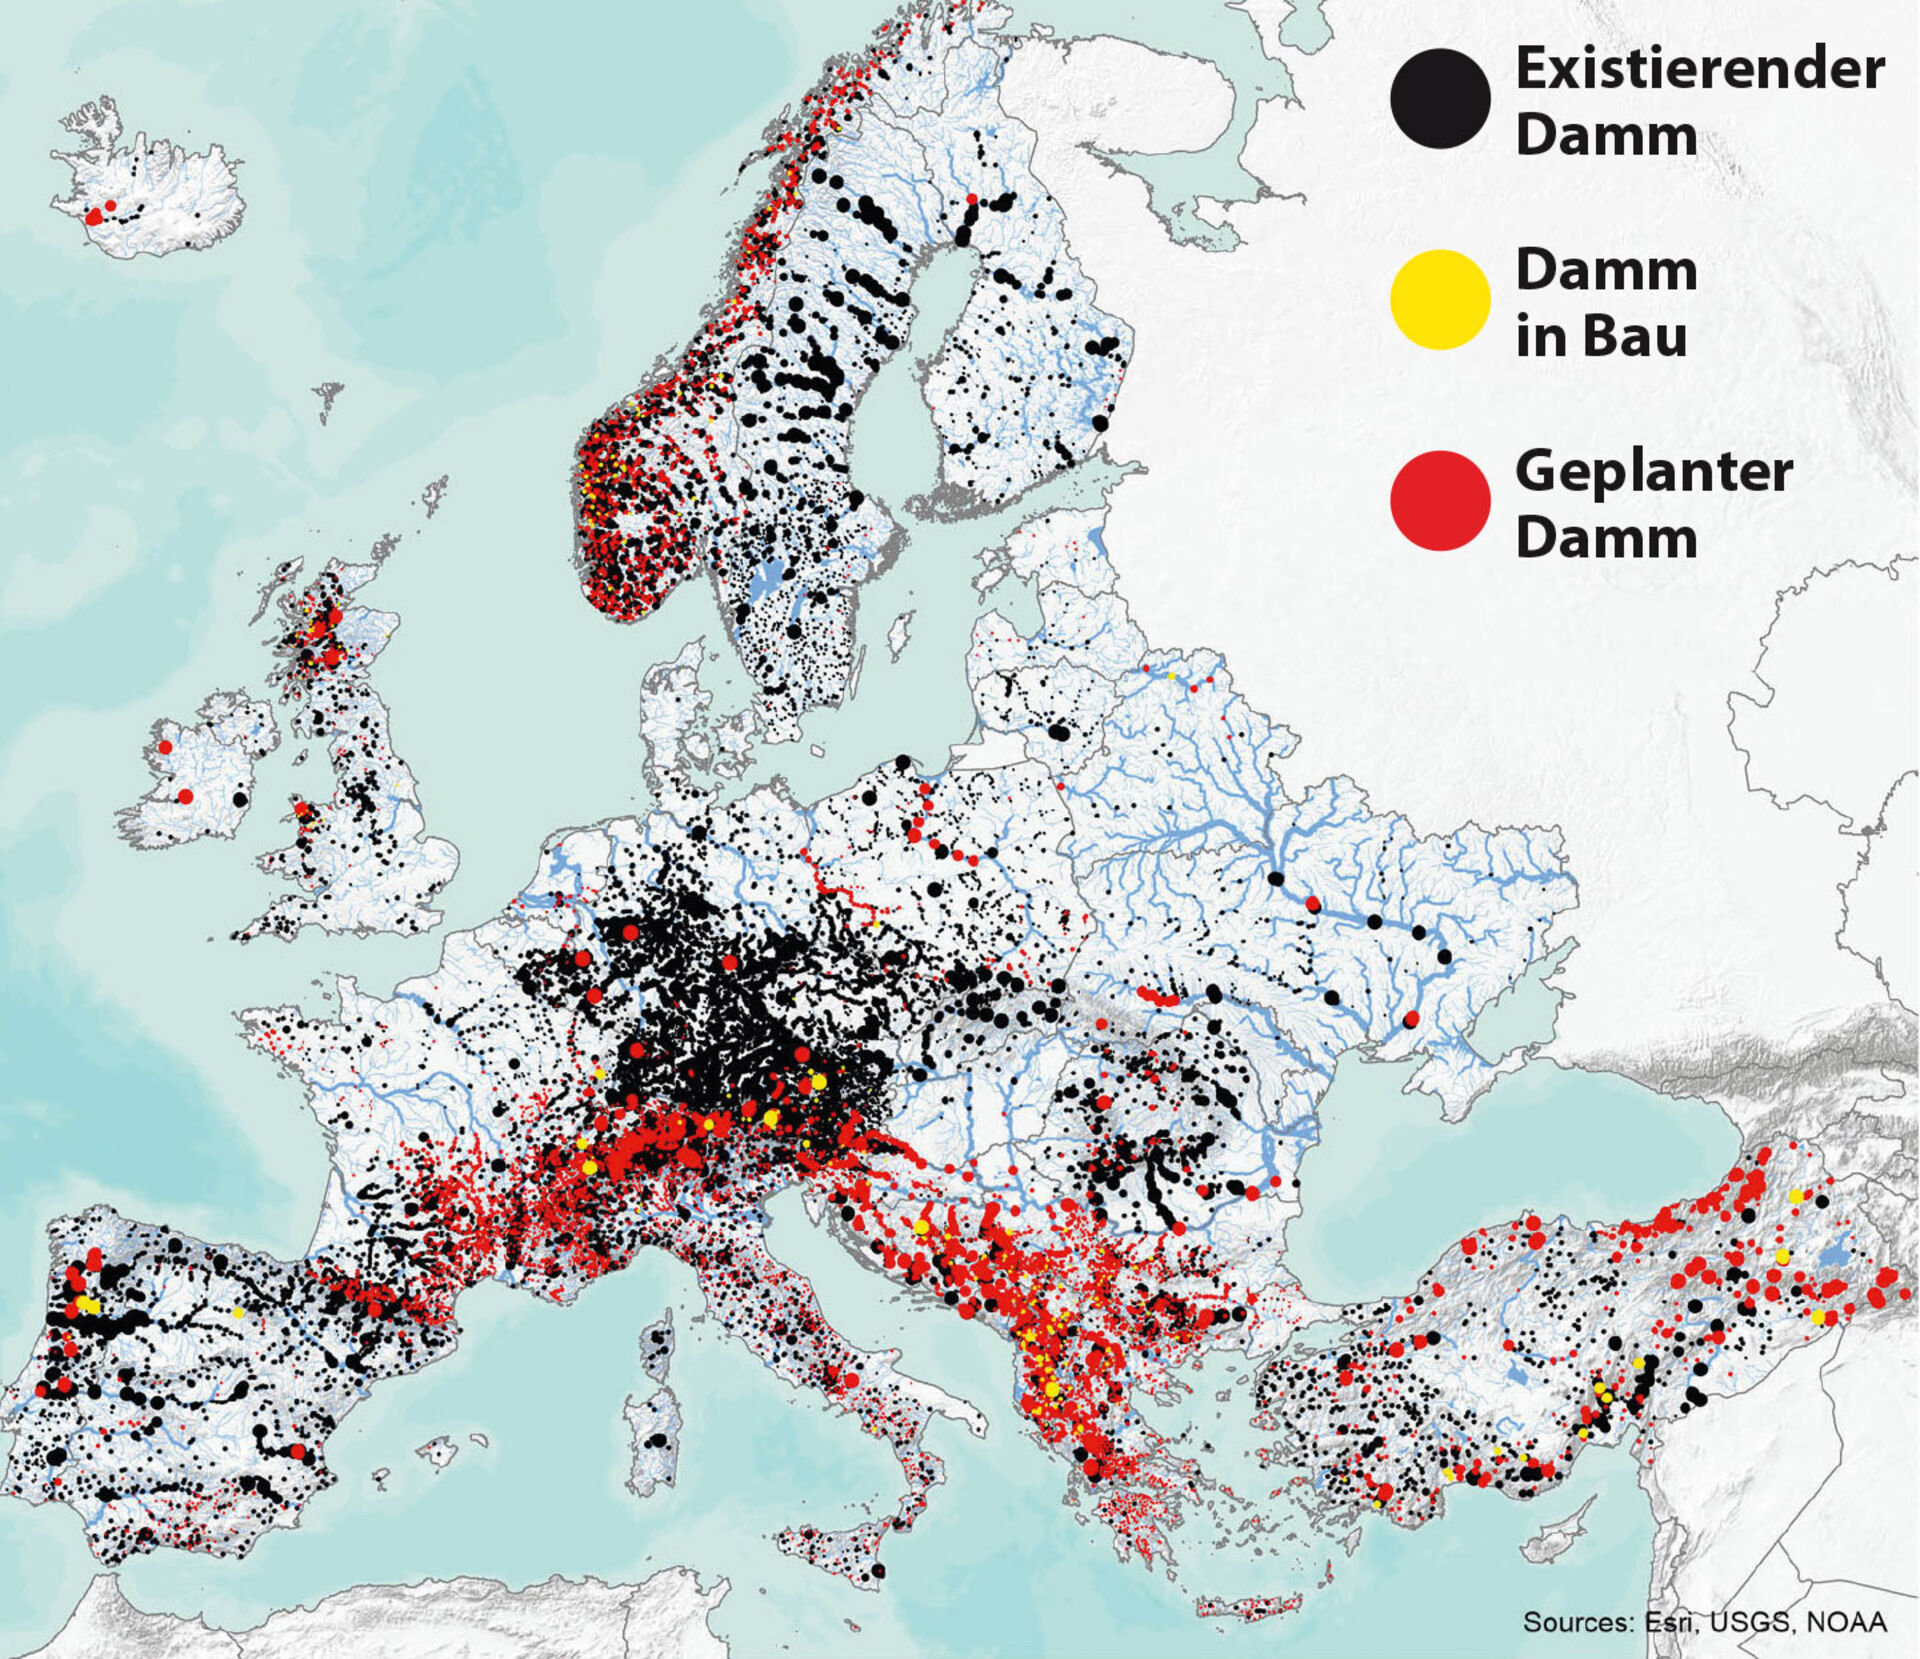  Damm-Übericht Europas  